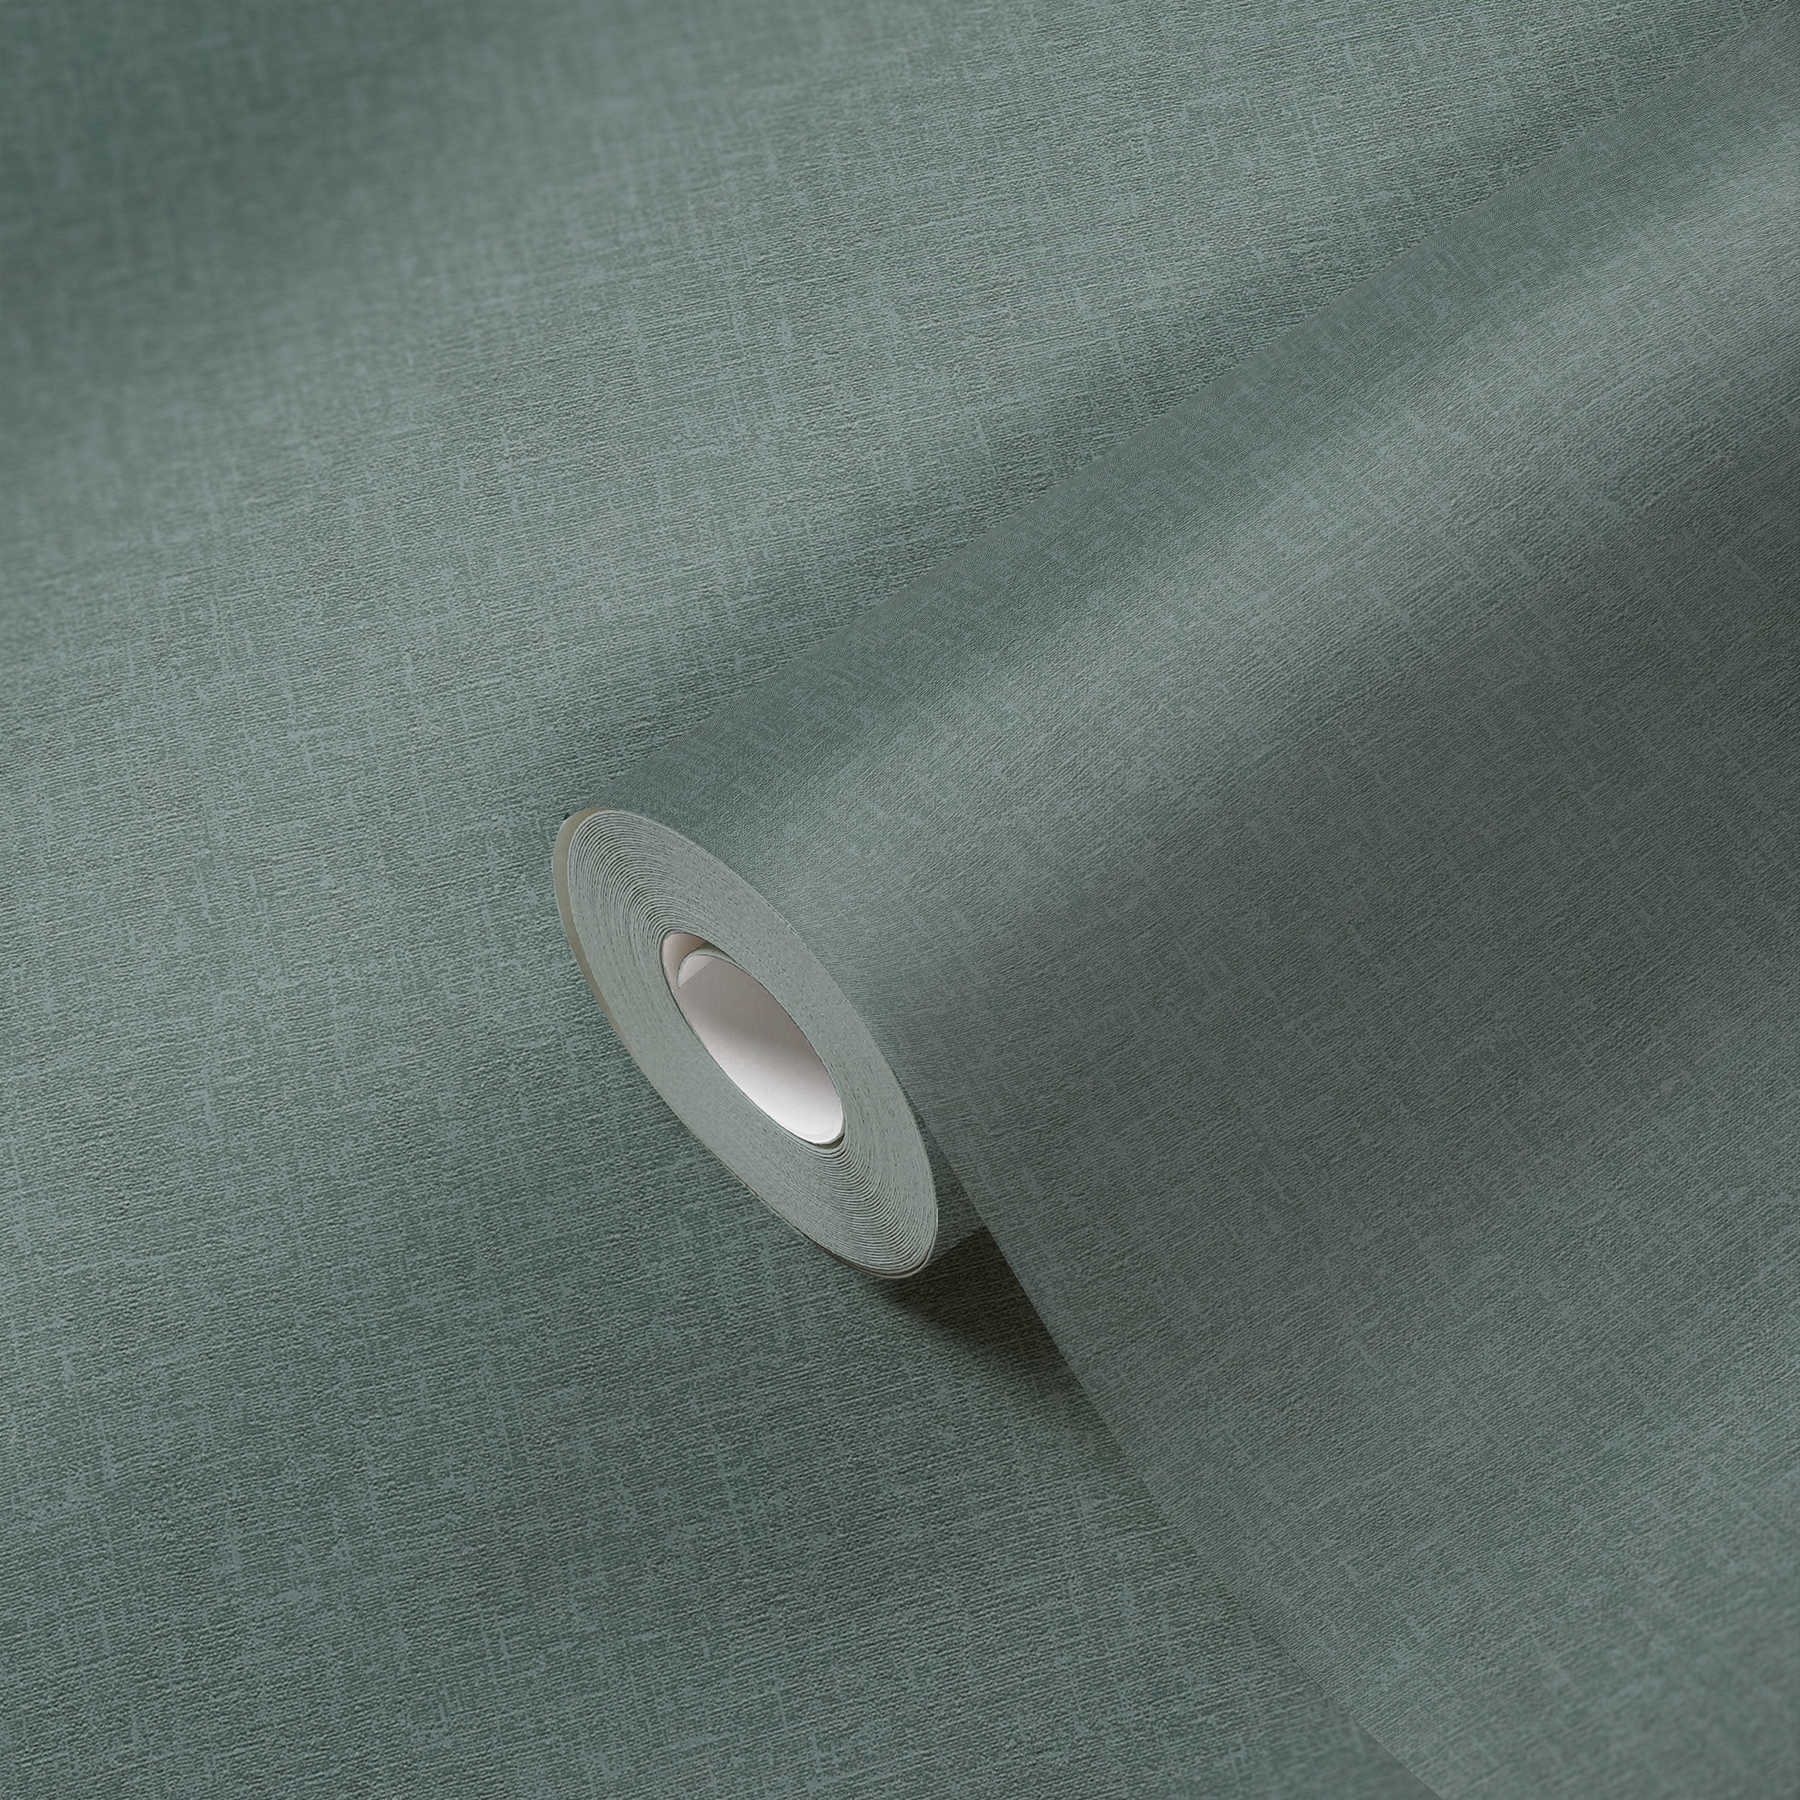             Eenheidsbehang gevlekt met textiel look - groen
        